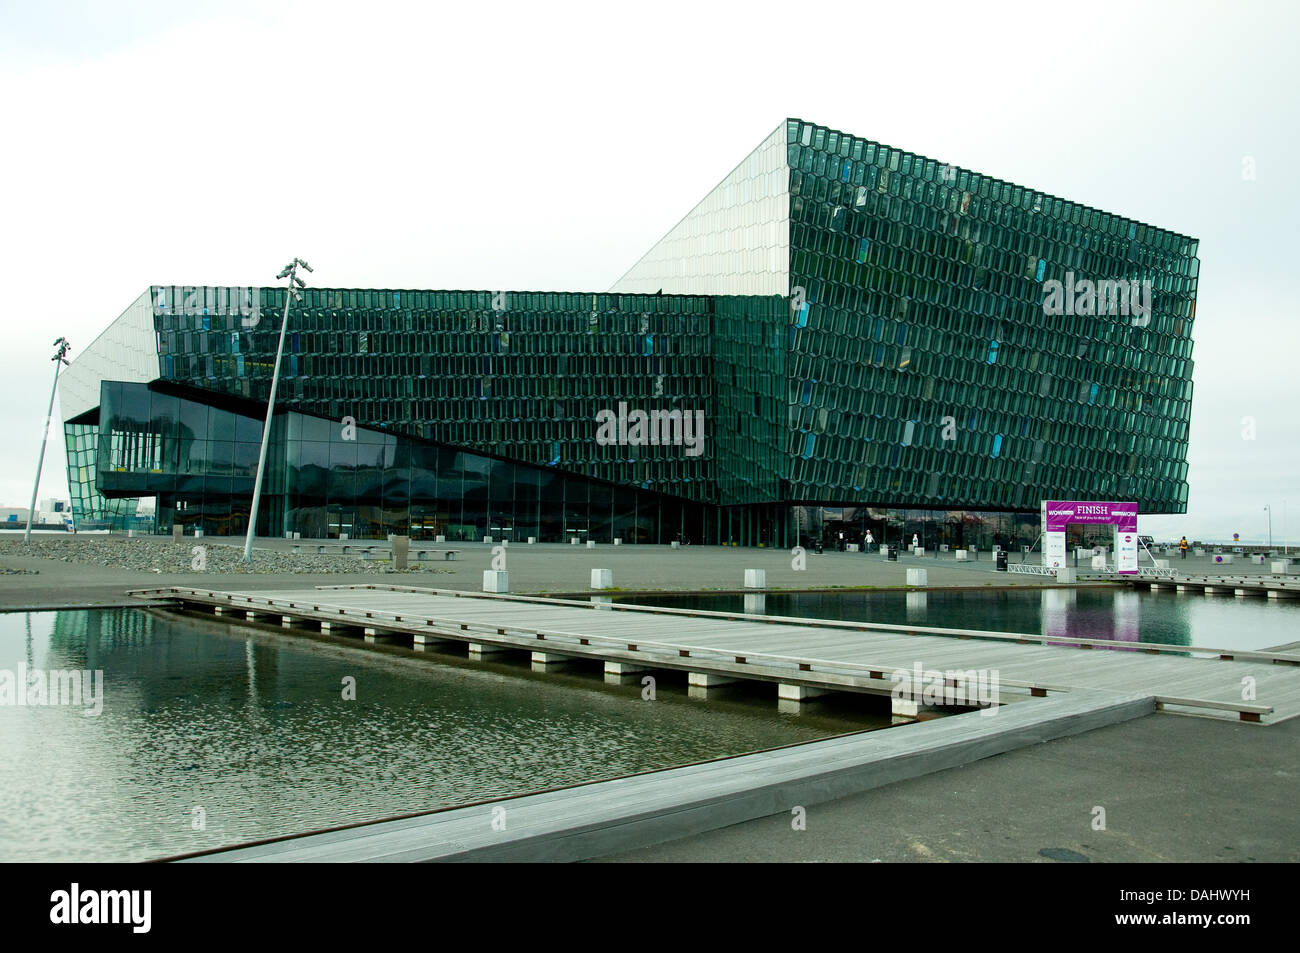 Reykjavik è controverso concert hall, harpa. ha vinto un importante premio E.U. nel 2013 per l'architettura contemporanea Foto Stock